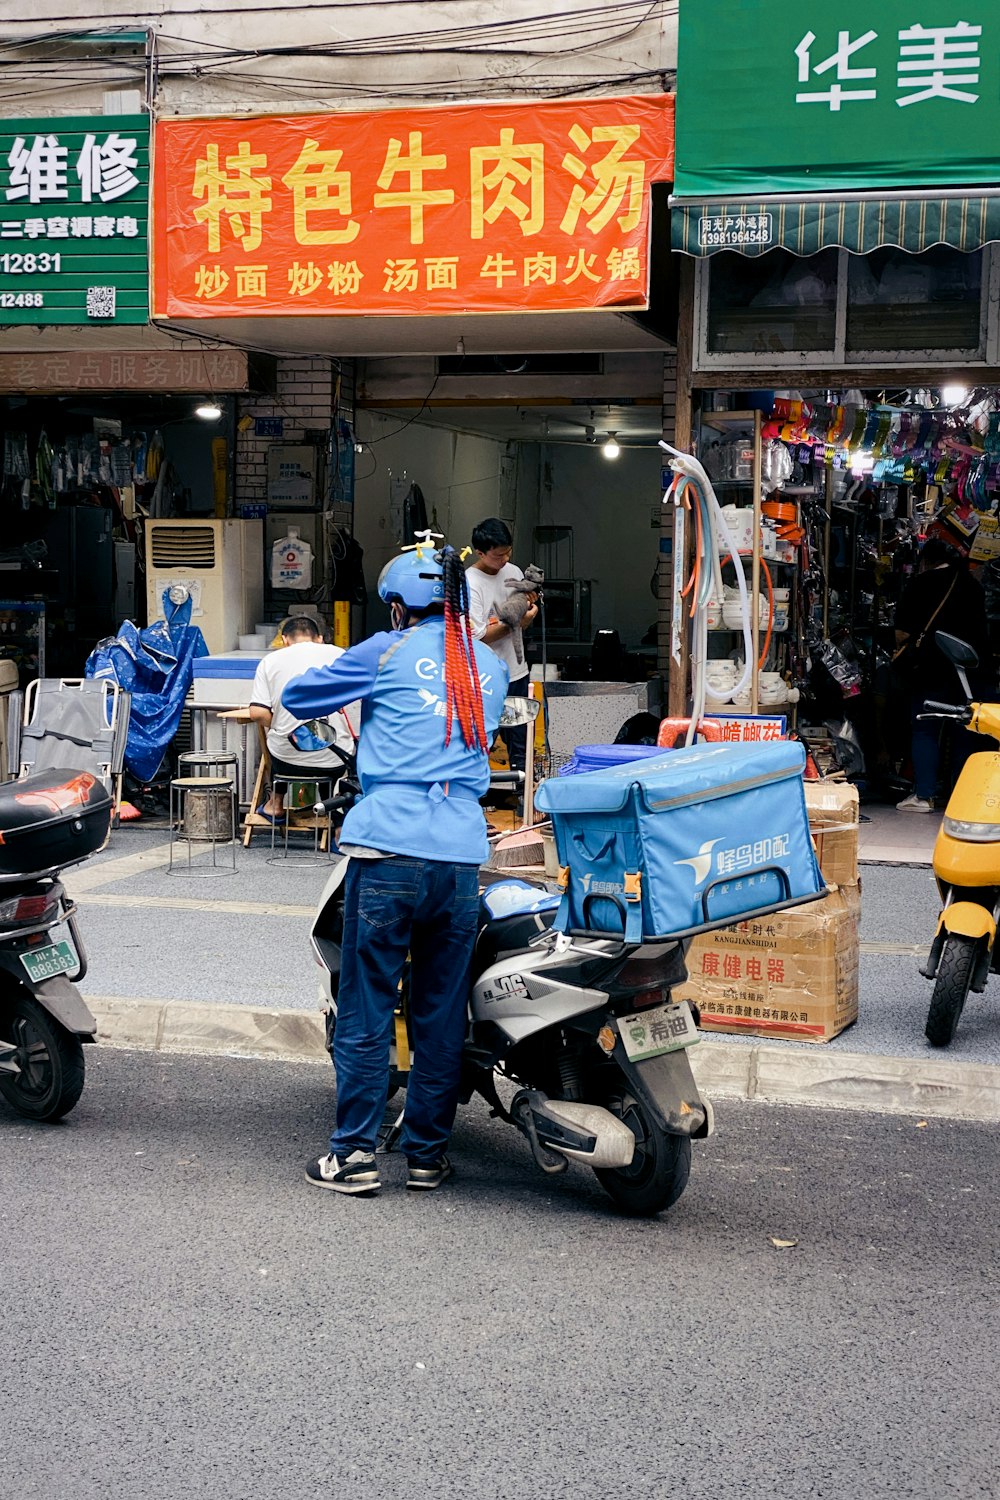 Ein Mann steht neben einem Roller auf einer Straße